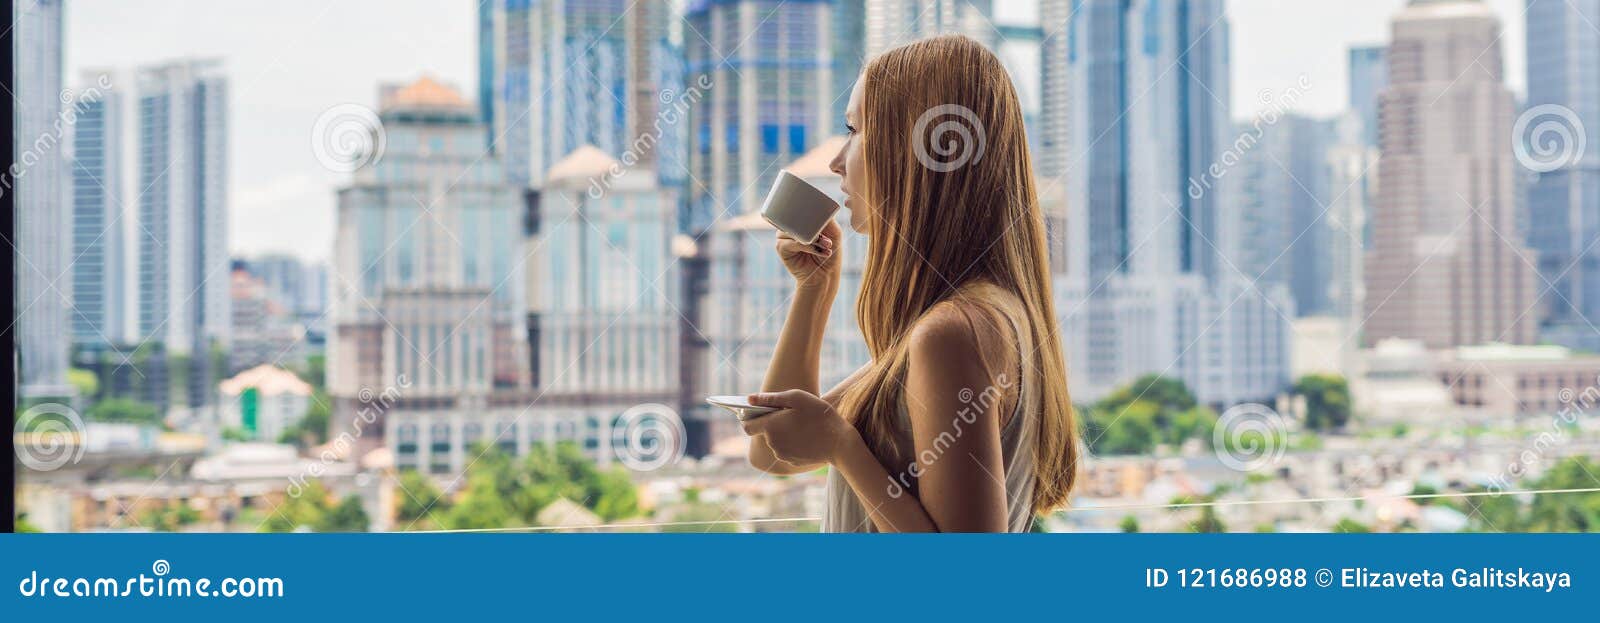 La mujer joven bebe el café por la mañana en el balcón que pasa por alto la ciudad grande y el formato largo de la BANDERA de los. La mujer joven bebe el café por la mañana en el balcón que pasa por alto la ciudad y los rascacielos grandes formato largo de la bandera